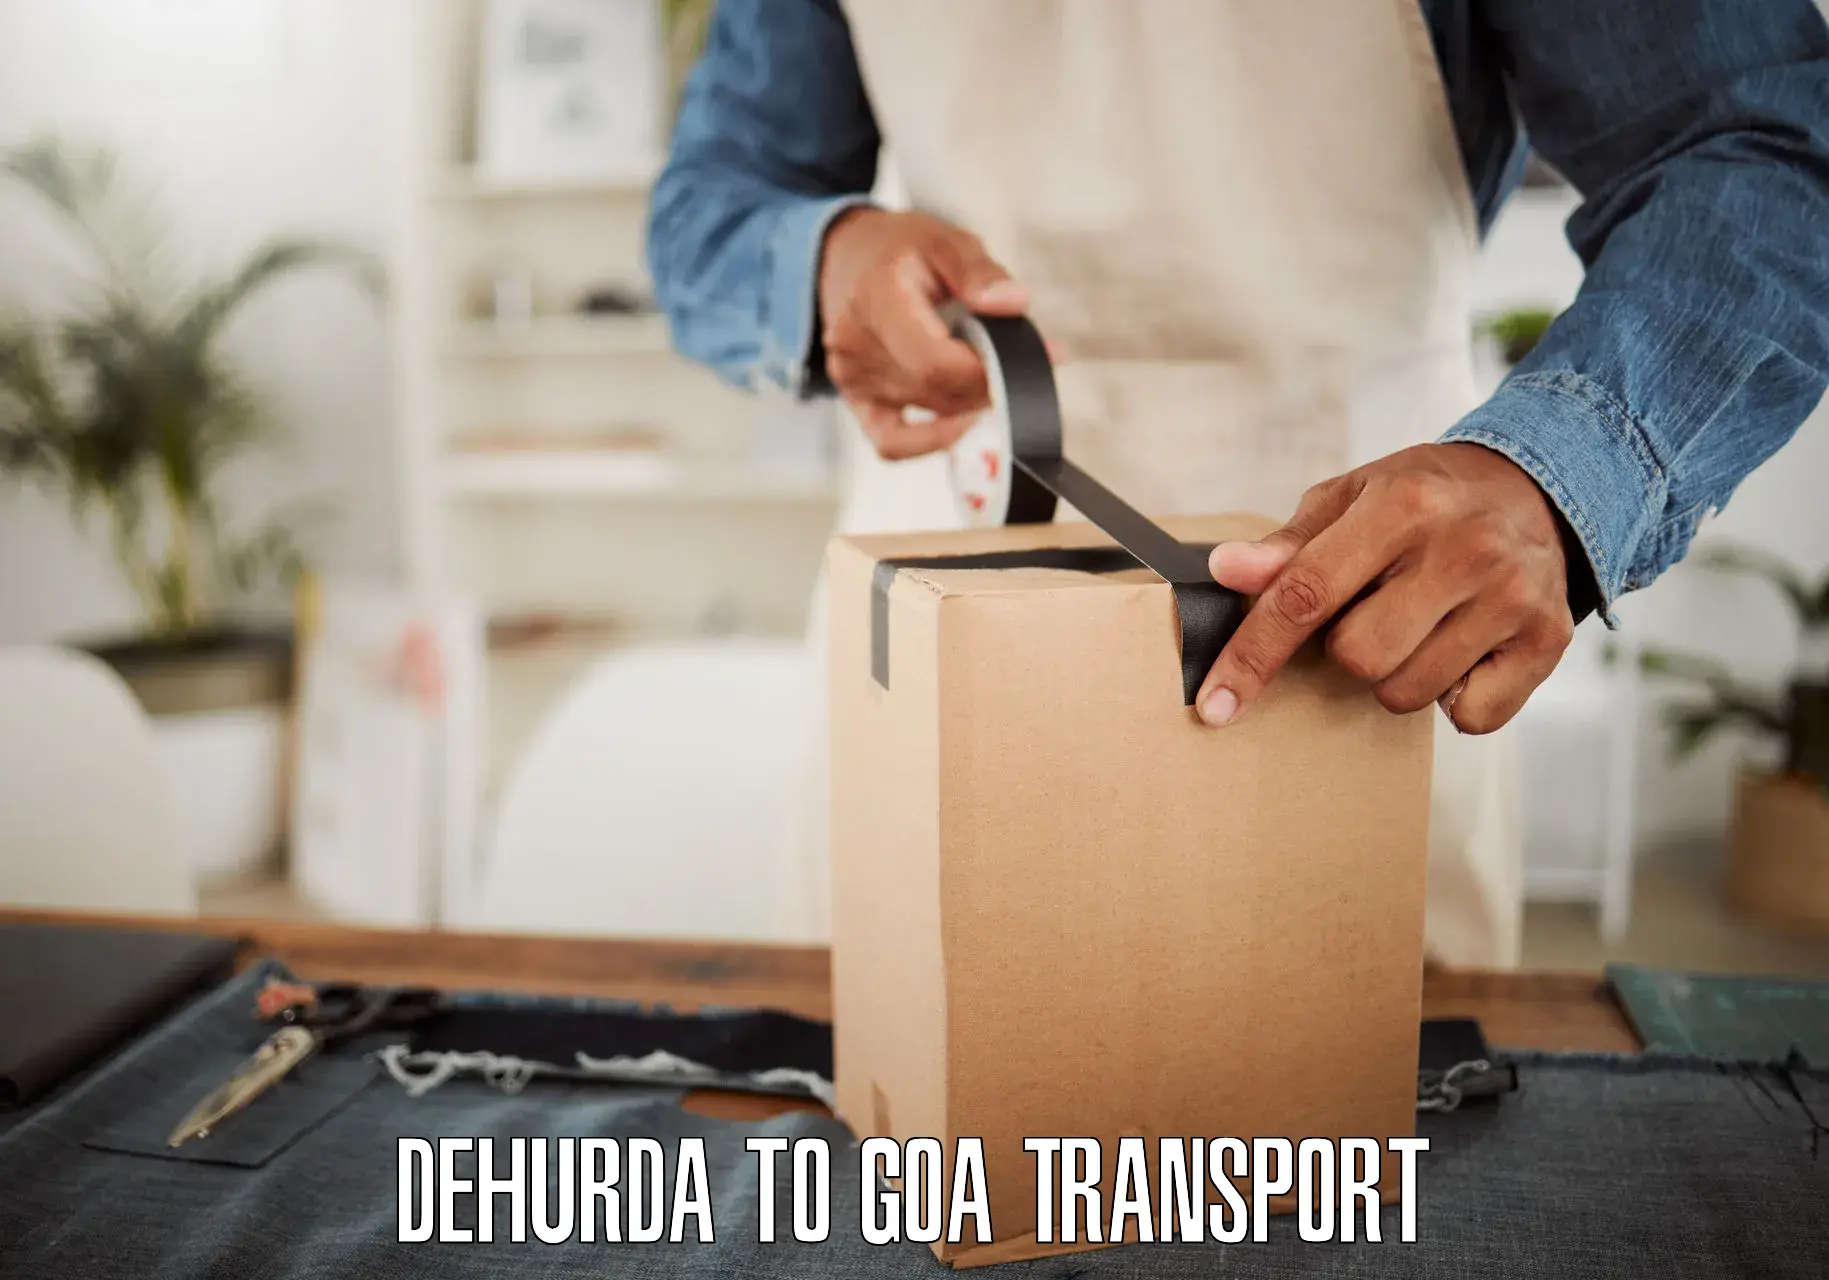 Interstate transport services Dehurda to Goa